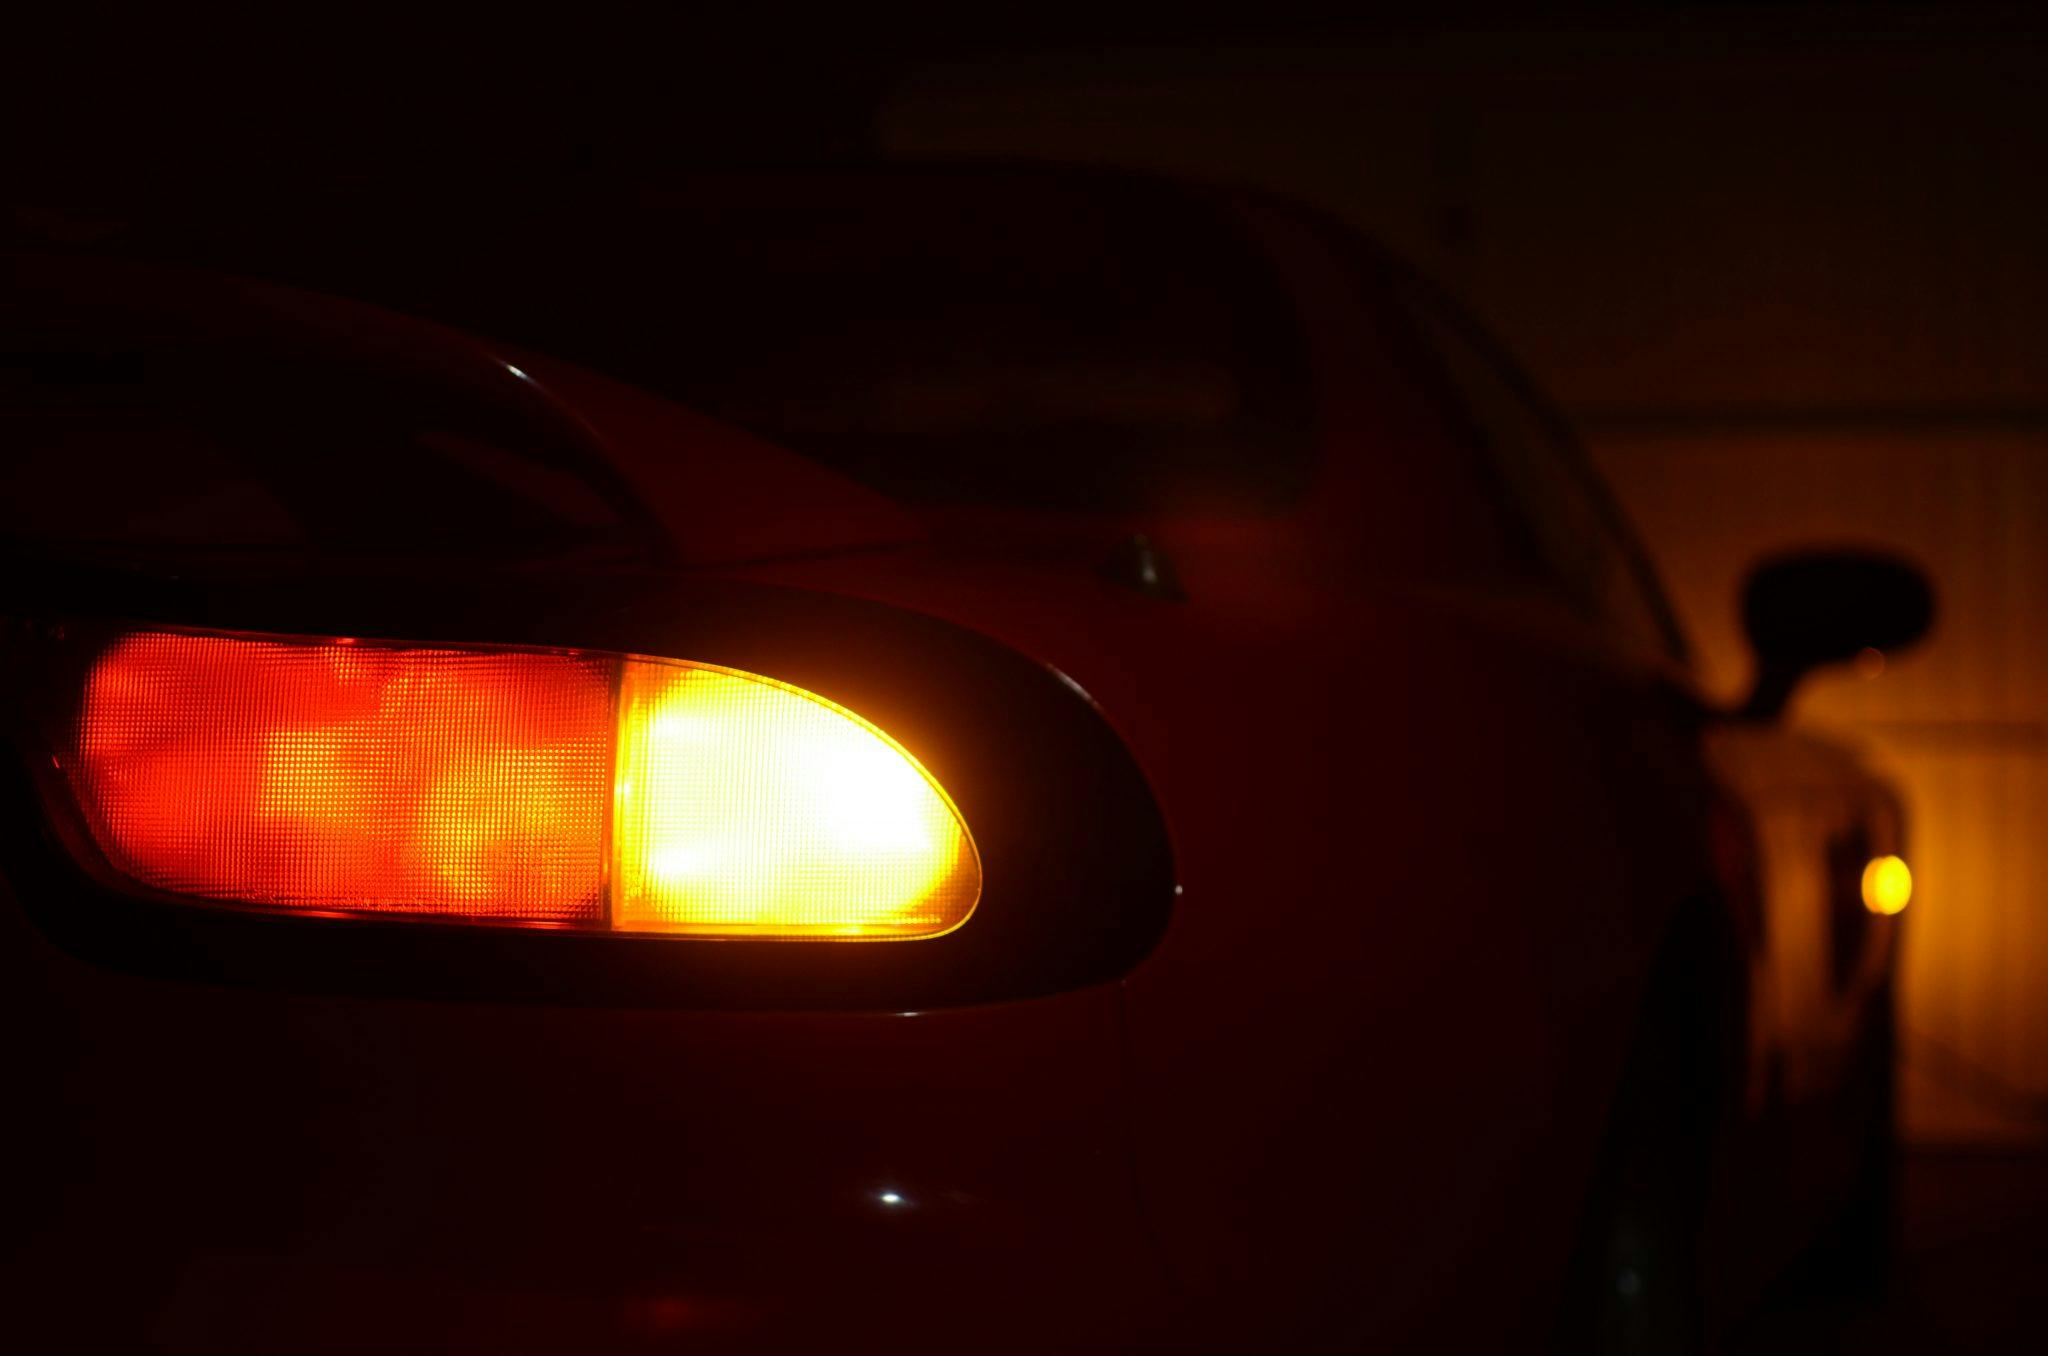 1994 Mazda RX-7 night